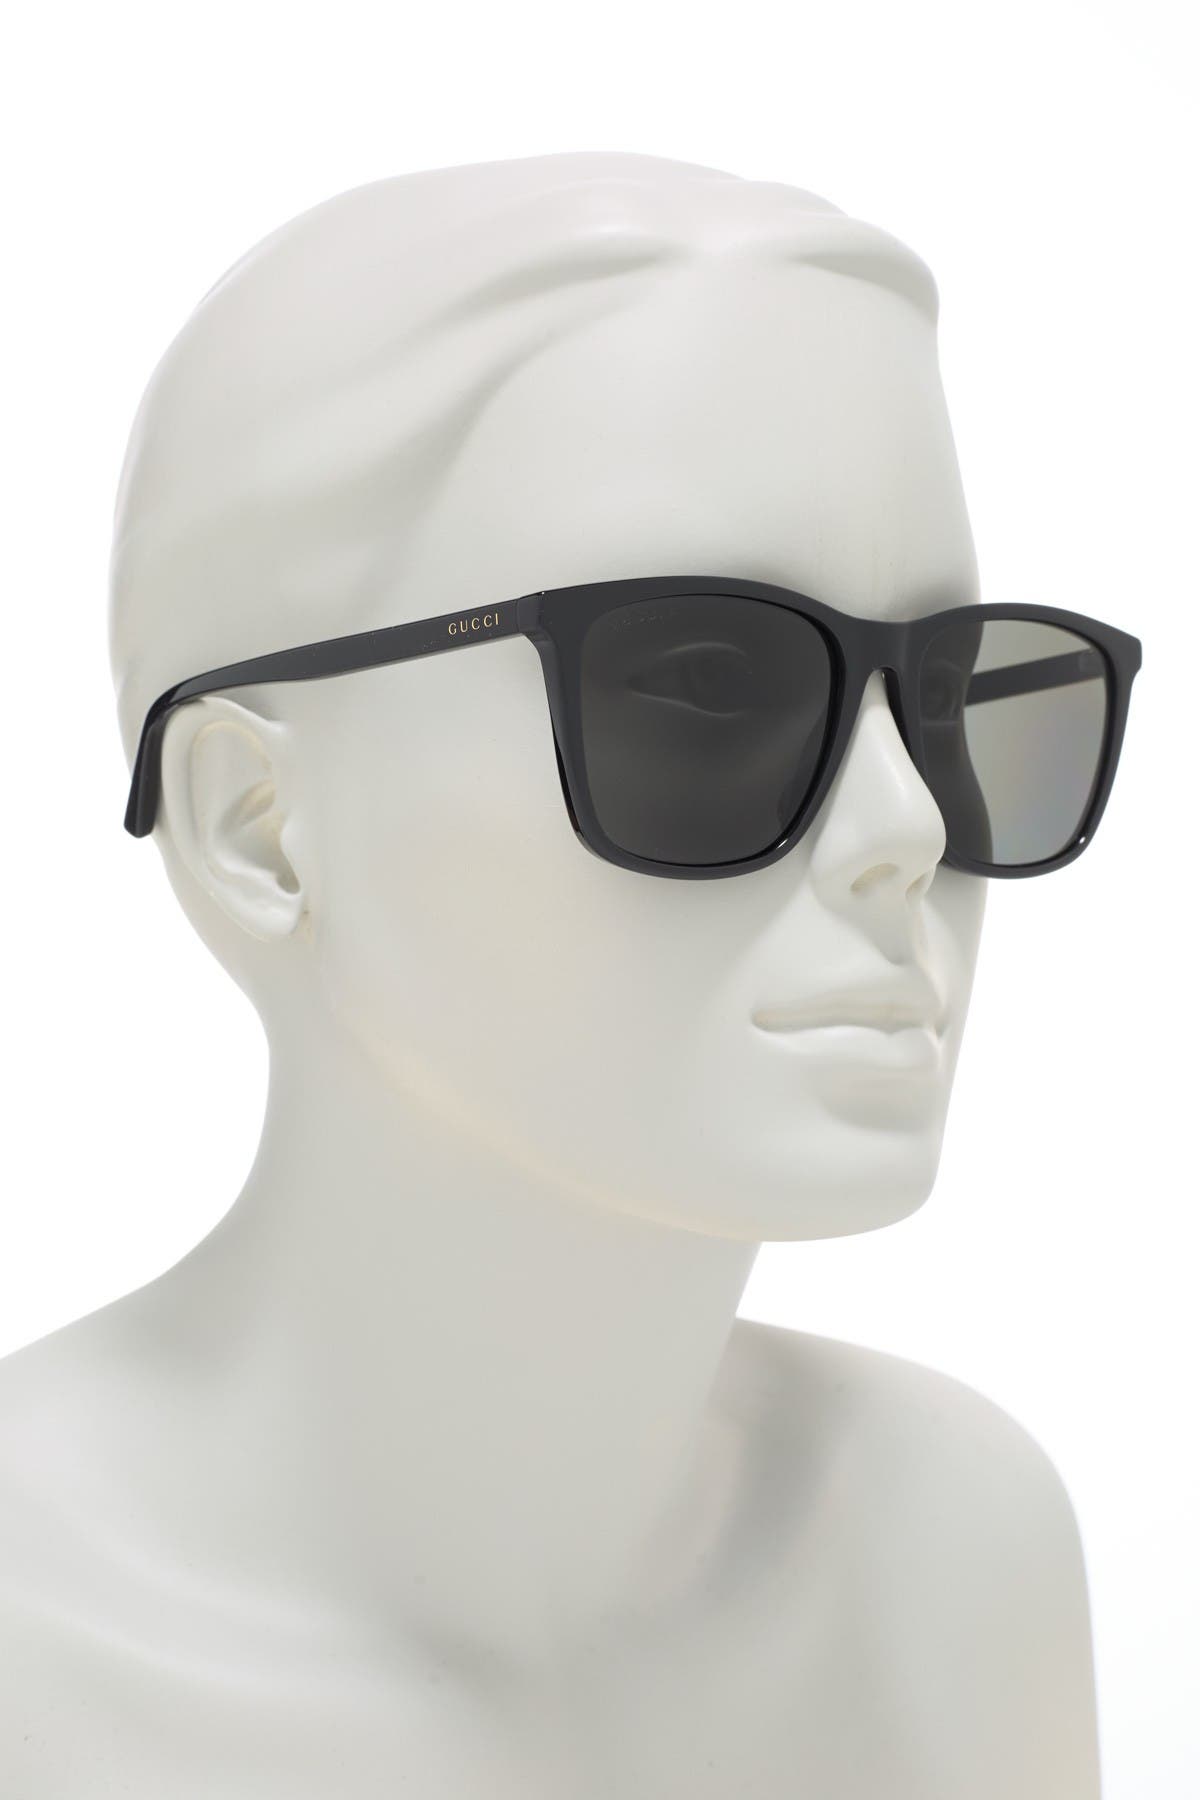 GUCCI | 58mm Square Sunglasses | HauteLook